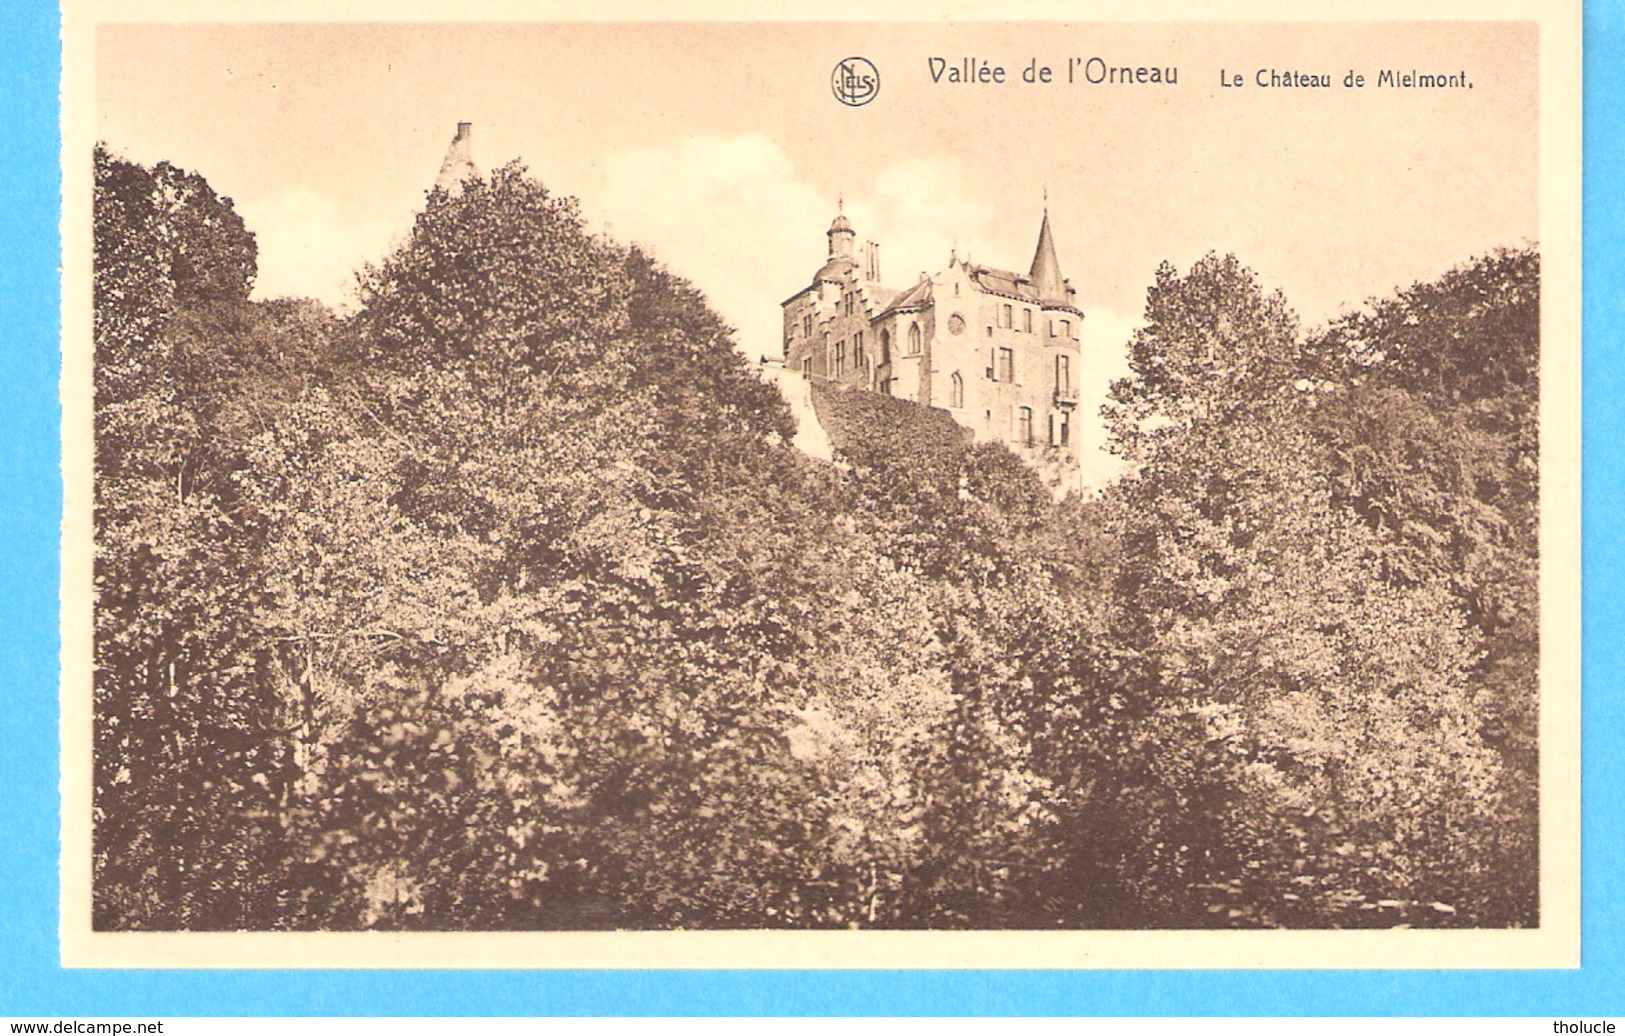 Publicité-Touring Club De Belgique-+/-1930-Onoz-Jemeppe-sur-Sambre-Le Château De Mielmont-Vallée De L'Orneau - Publicité